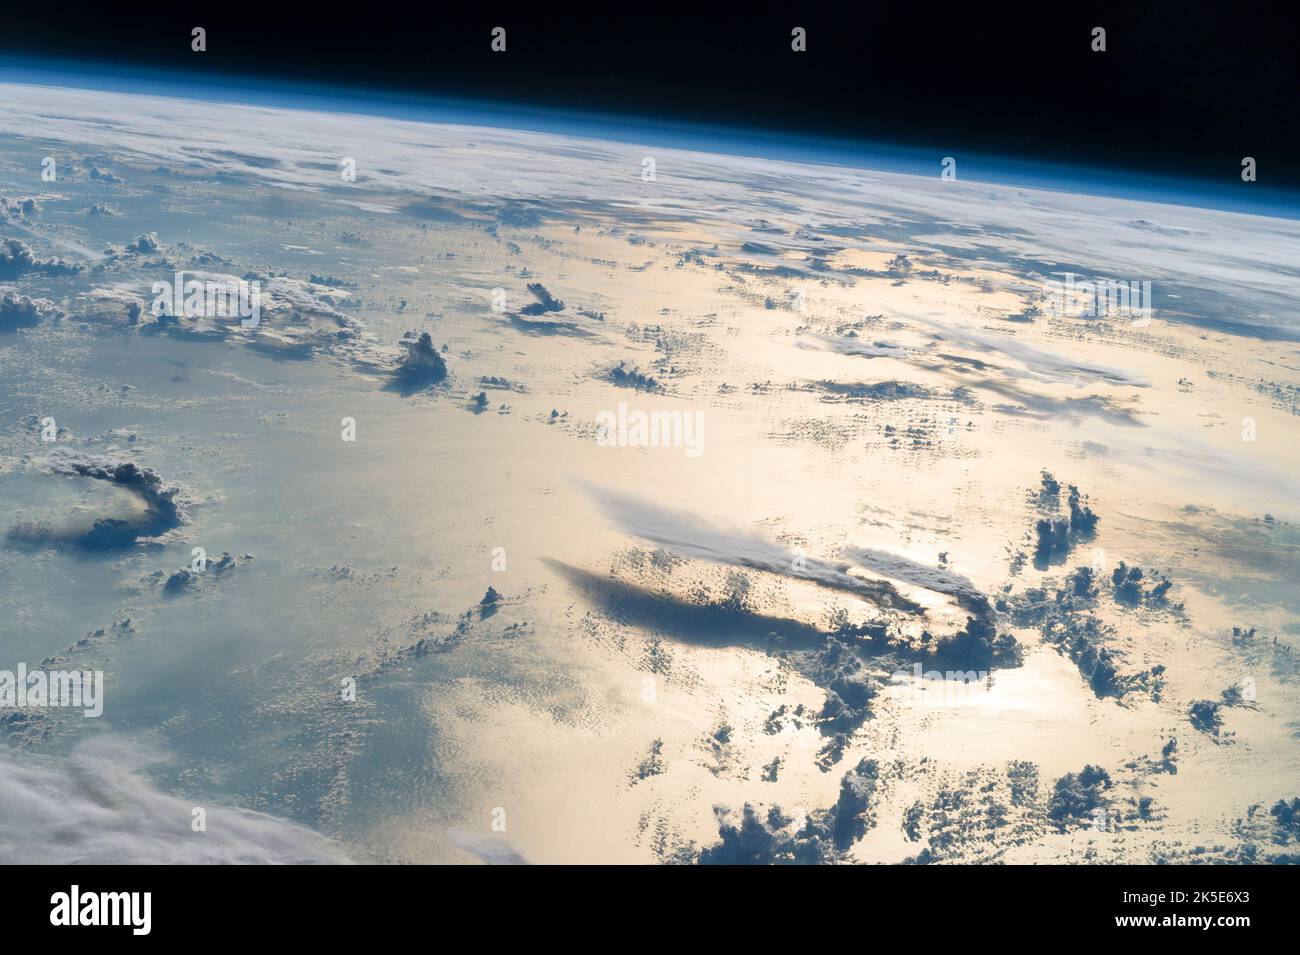 Volando sopra il Mare delle Filippine, un astronauta guardò verso l'orizzonte dalla Stazione spaziale Internazionale e sparò questa fotografia di nuvole tridimensionali, la sottile busta blu dell'atmosfera e il nero dello spazio. La luce solare del tardo pomeriggio illumina un'ampia striscia della superficie del mare sul lato destro dell'immagine. In lontananza, un ampio strato di nuvole oscura principalmente le isole Filippine settentrionali (in alto a destra). Una versione unica di un'immagine originale della NASA. Credito: NASA Foto Stock